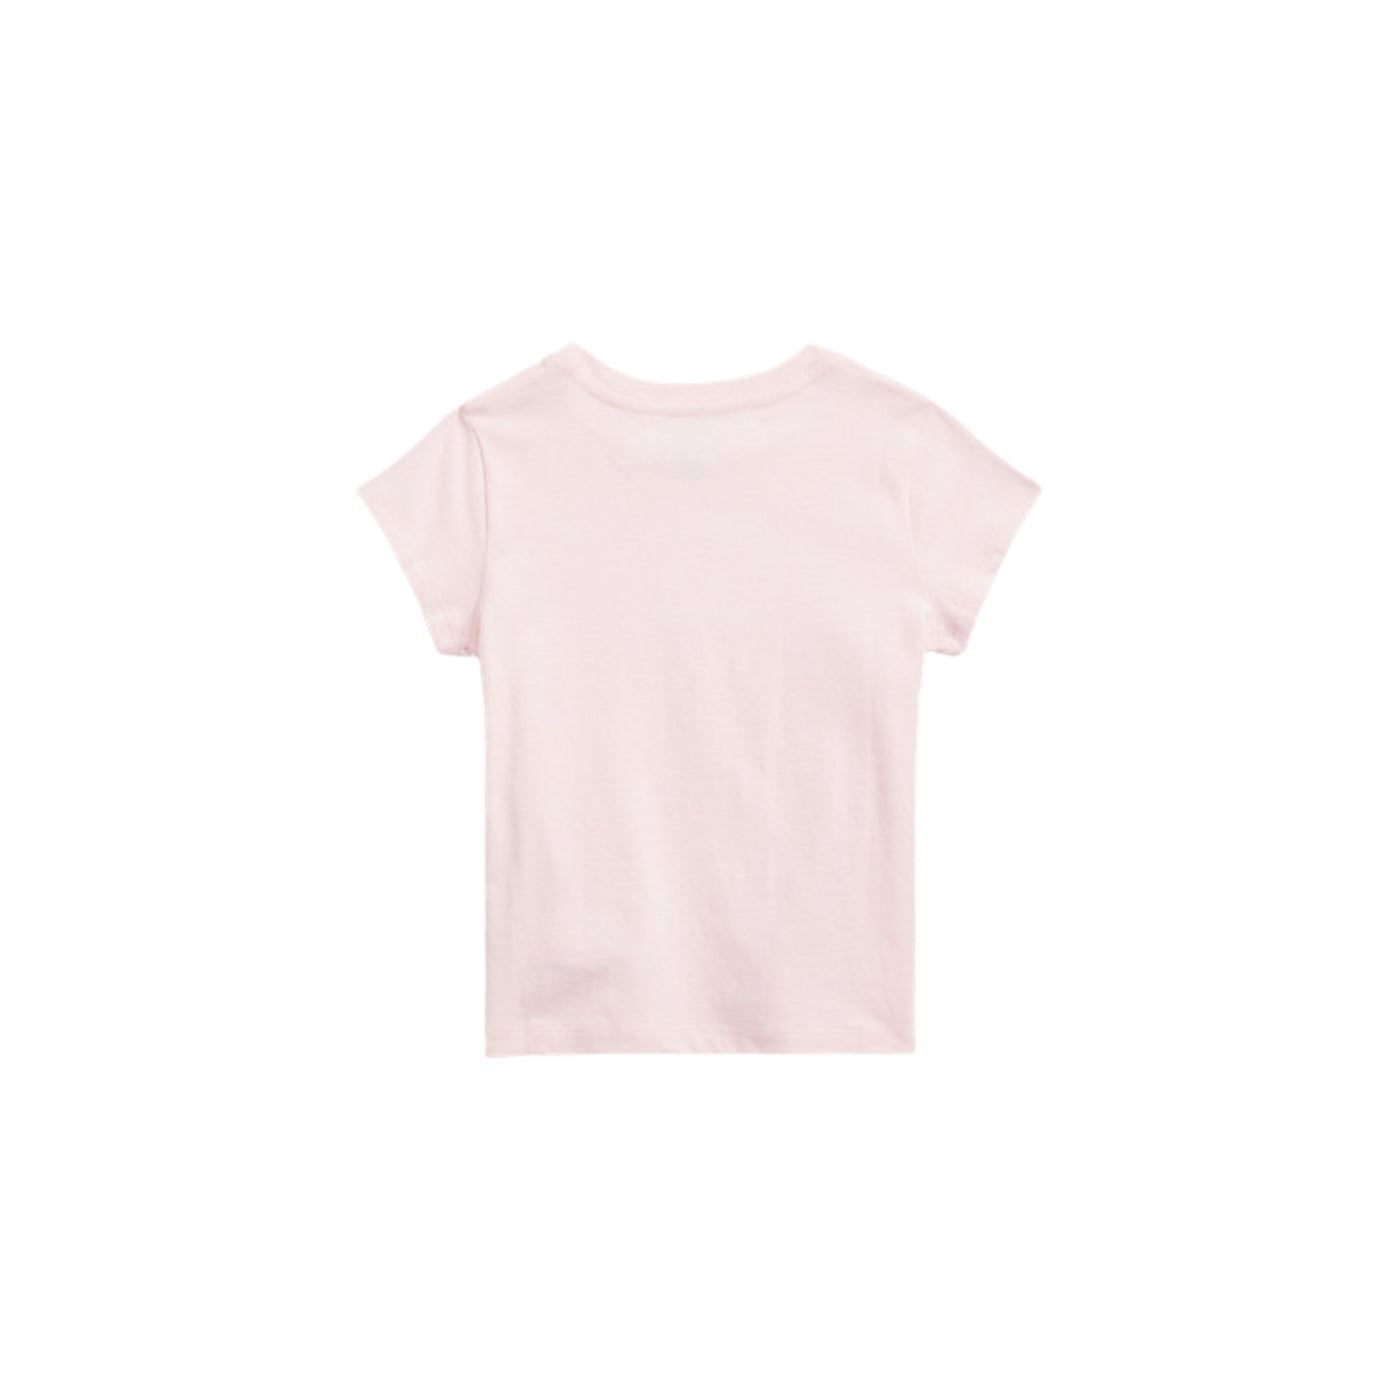 T-shirt Bambina 2-3 anni con logo a fiori